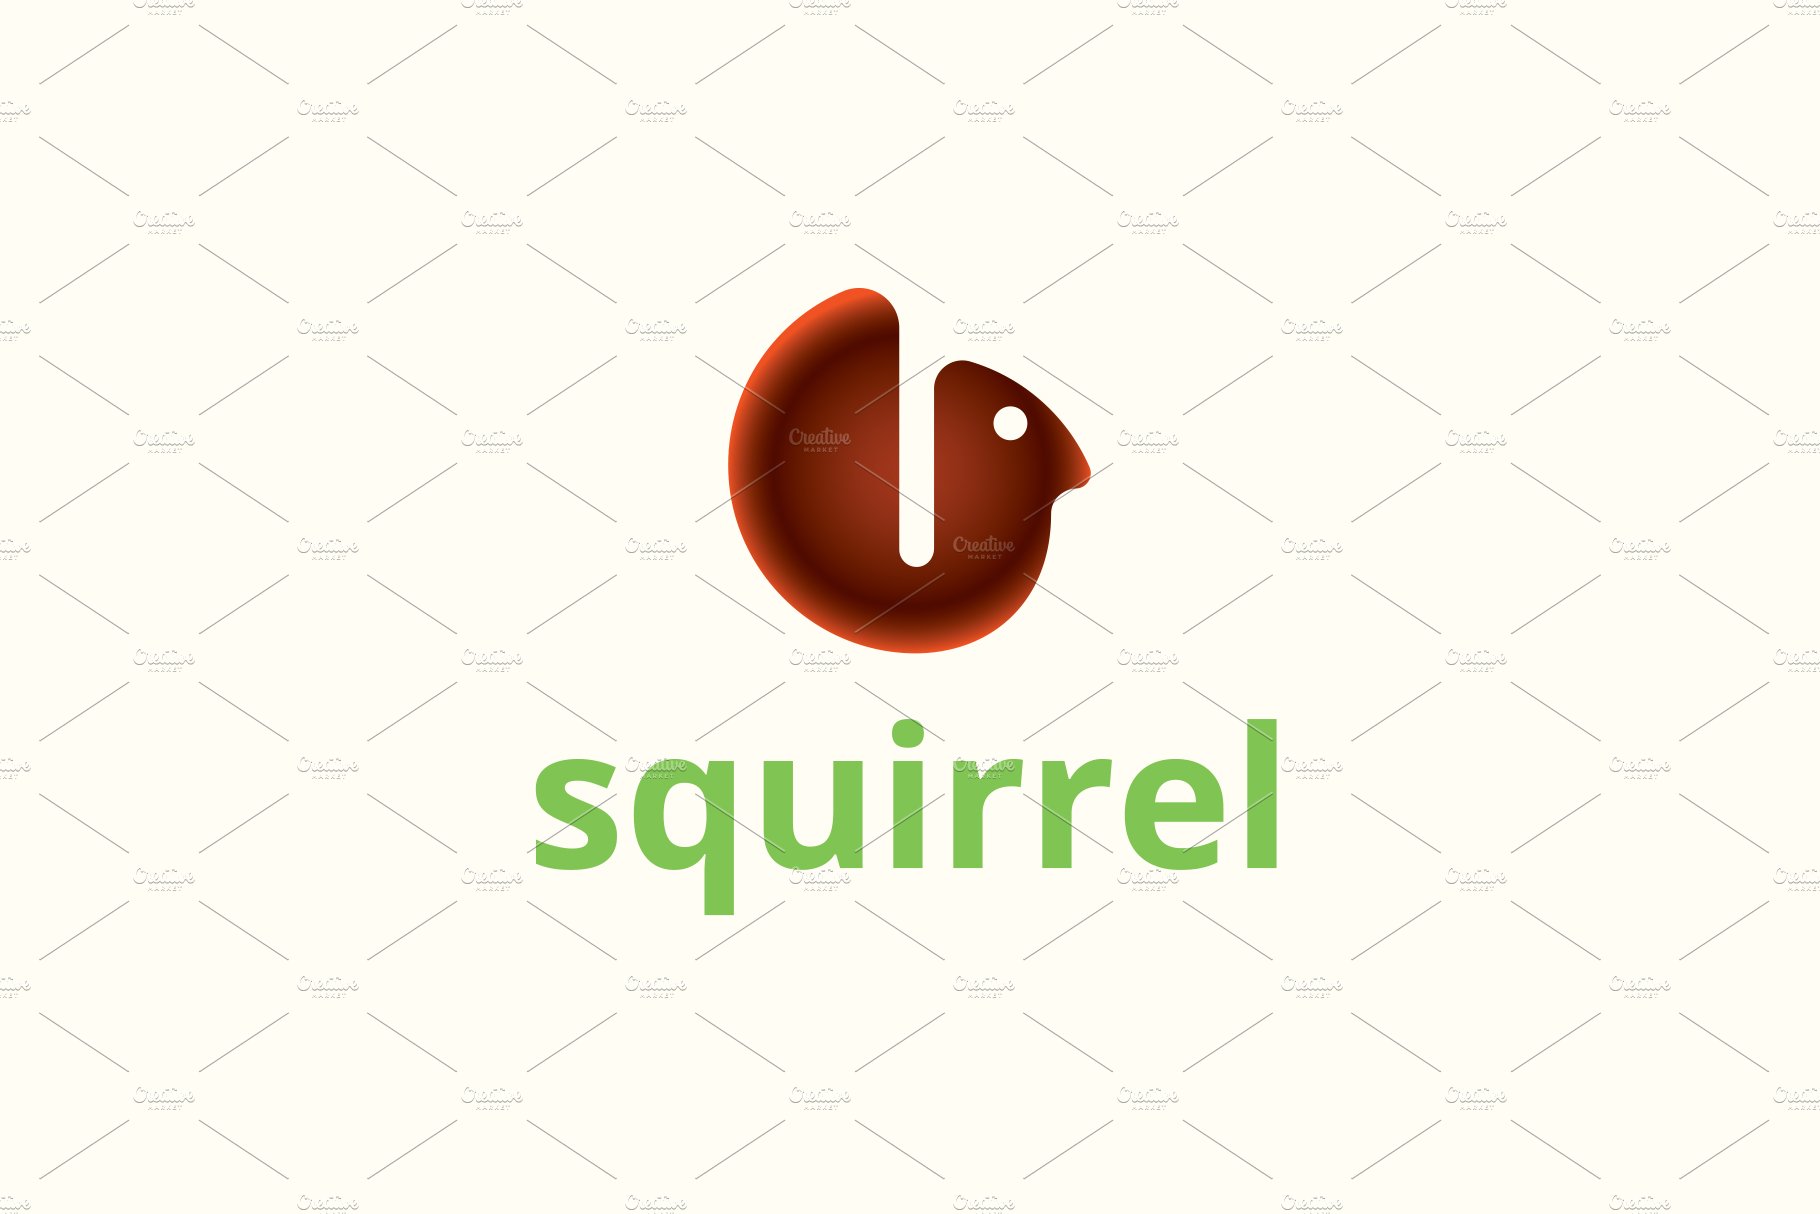 Squirrel Logo Design cover image.